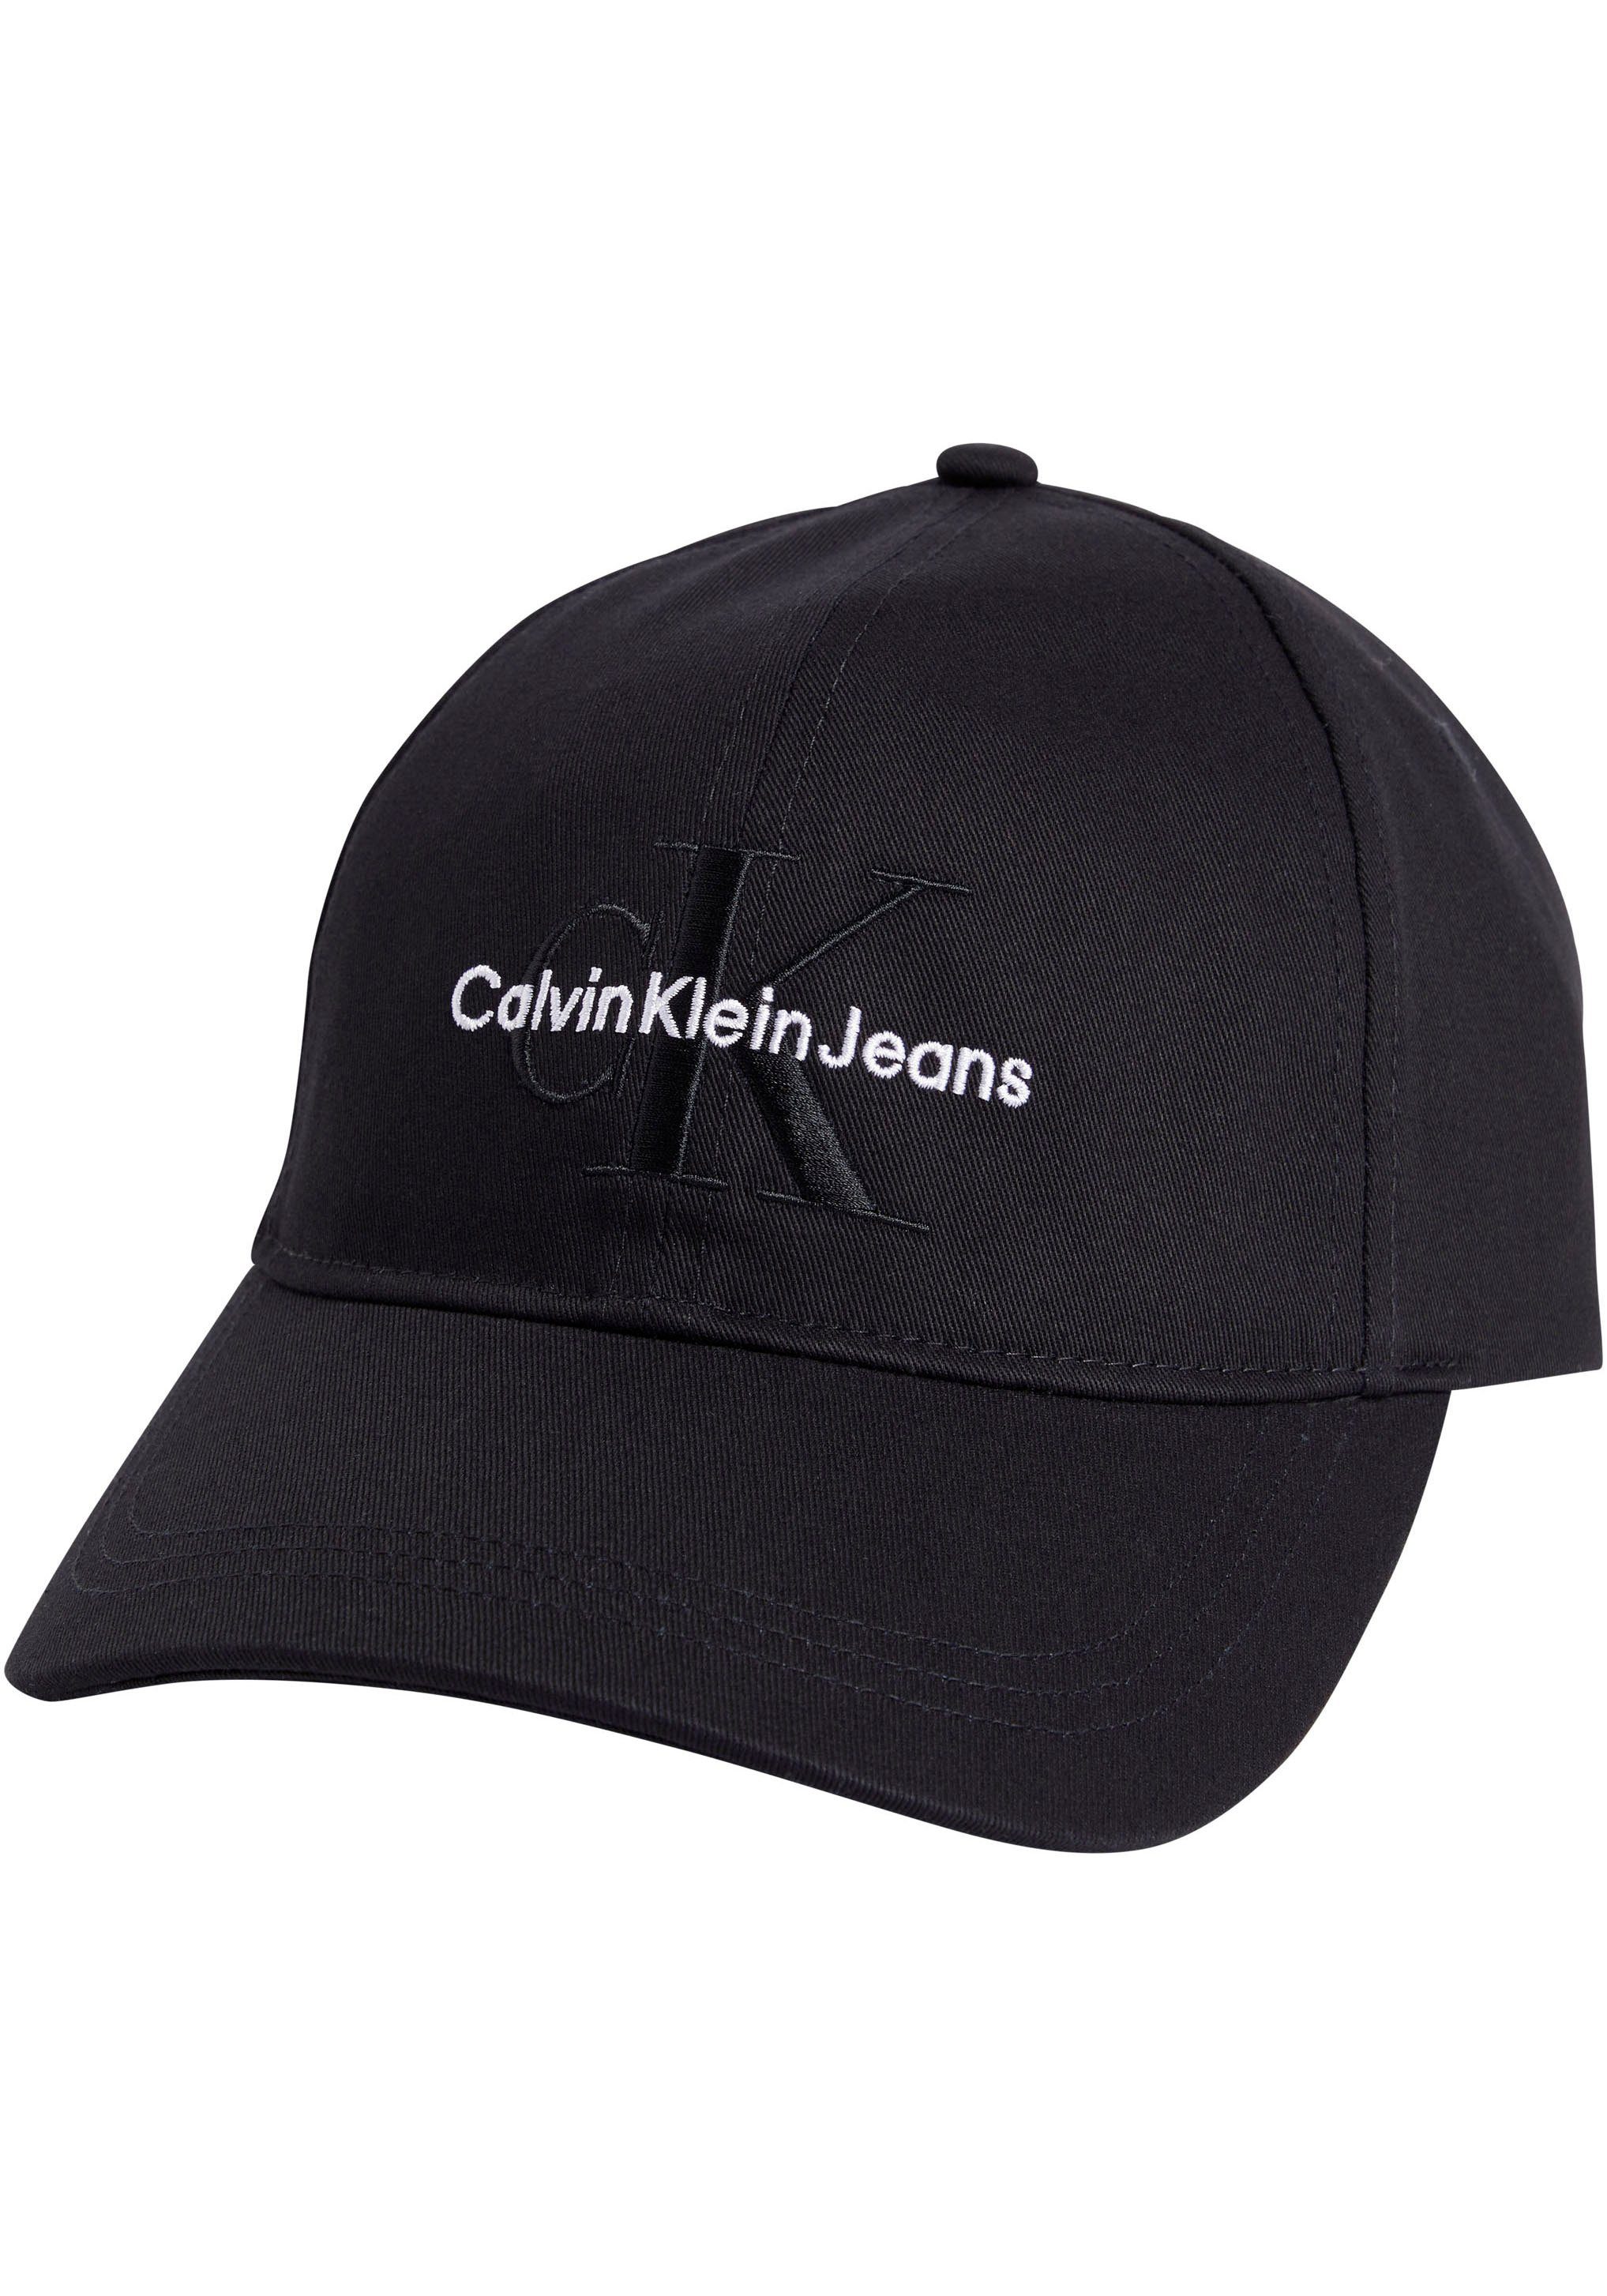 Calvin Klein Jeans Caps für Herren online kaufen | OTTO | Flex Caps